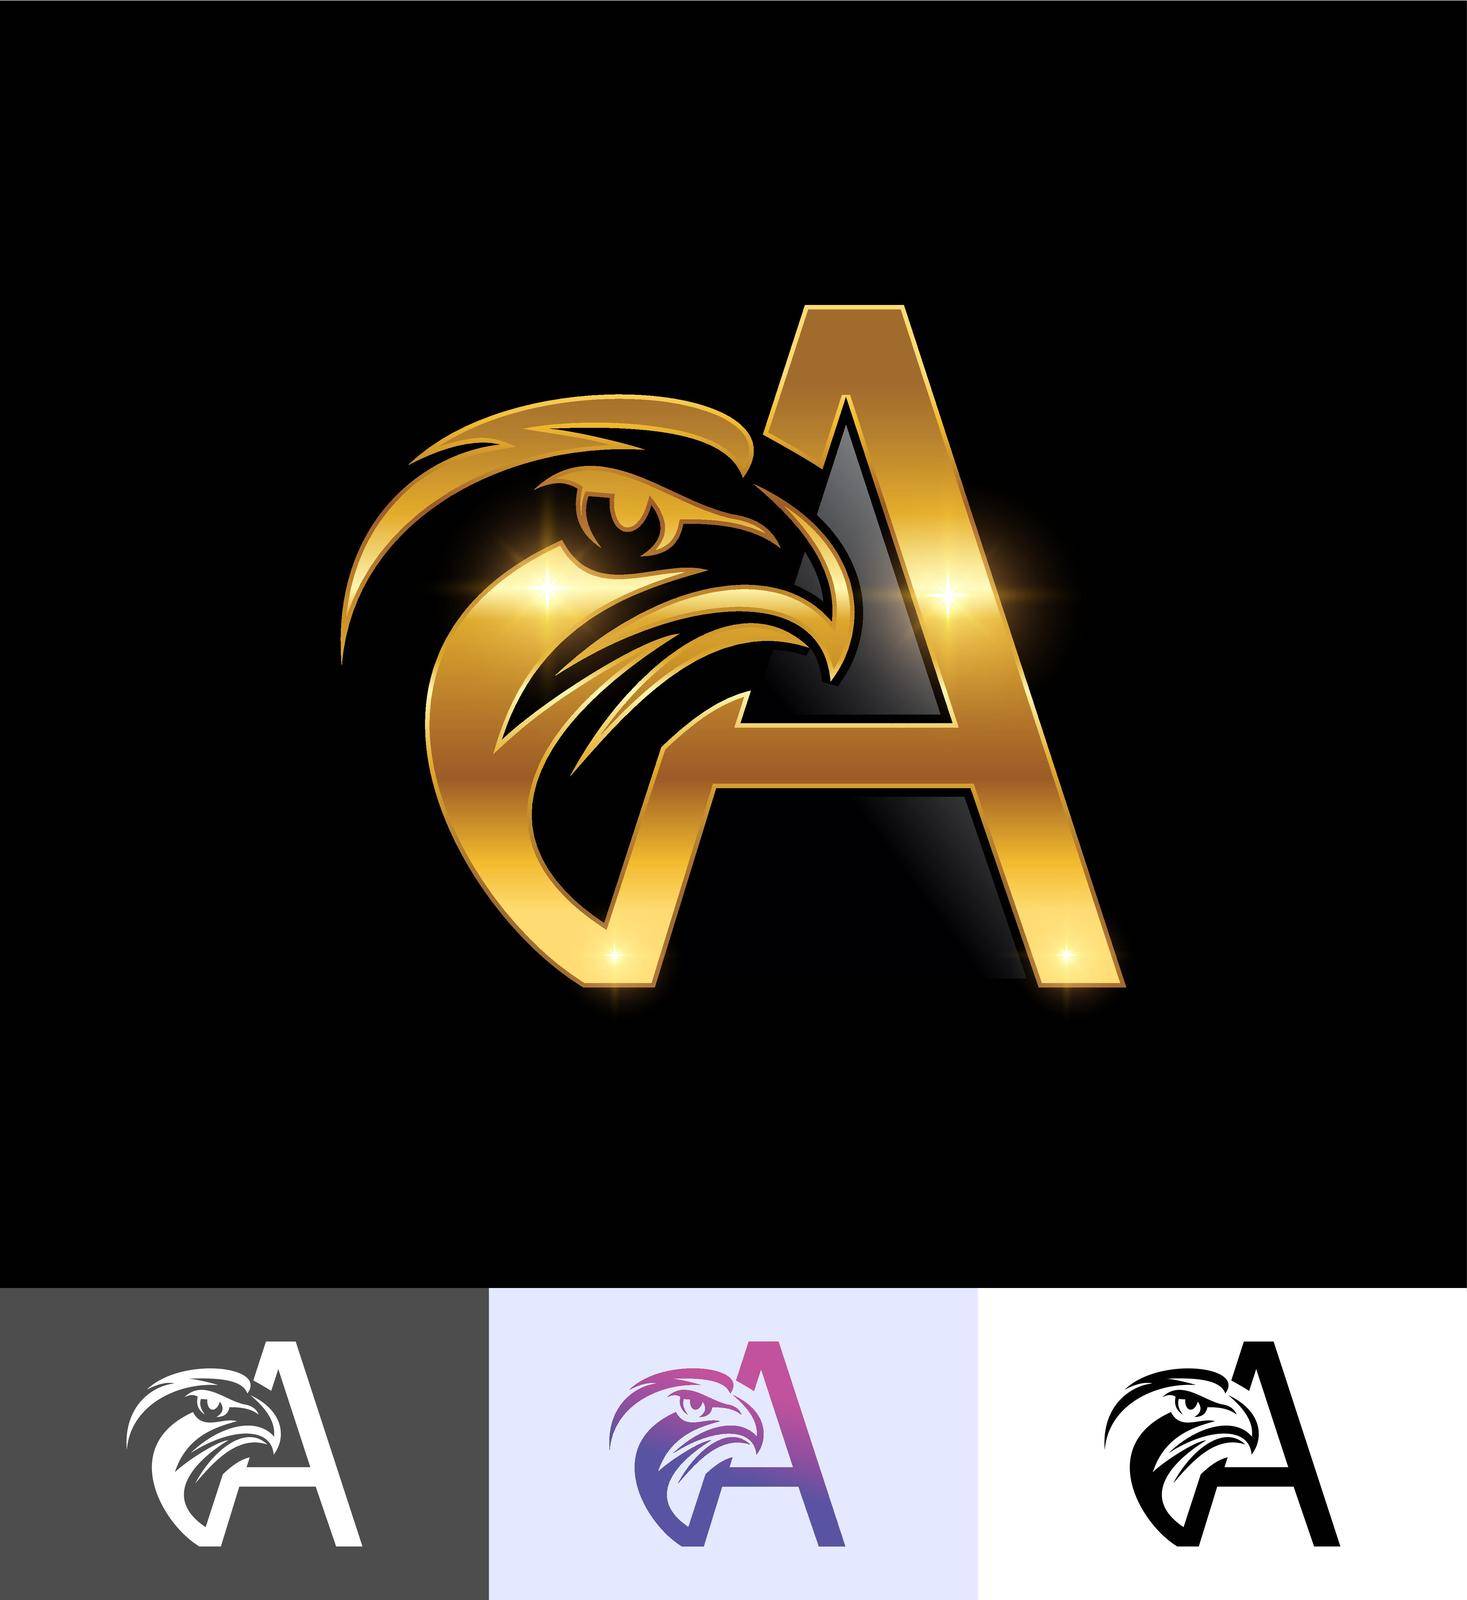 A vector illustration set of Golden Eagle Monogram Initial Letter A